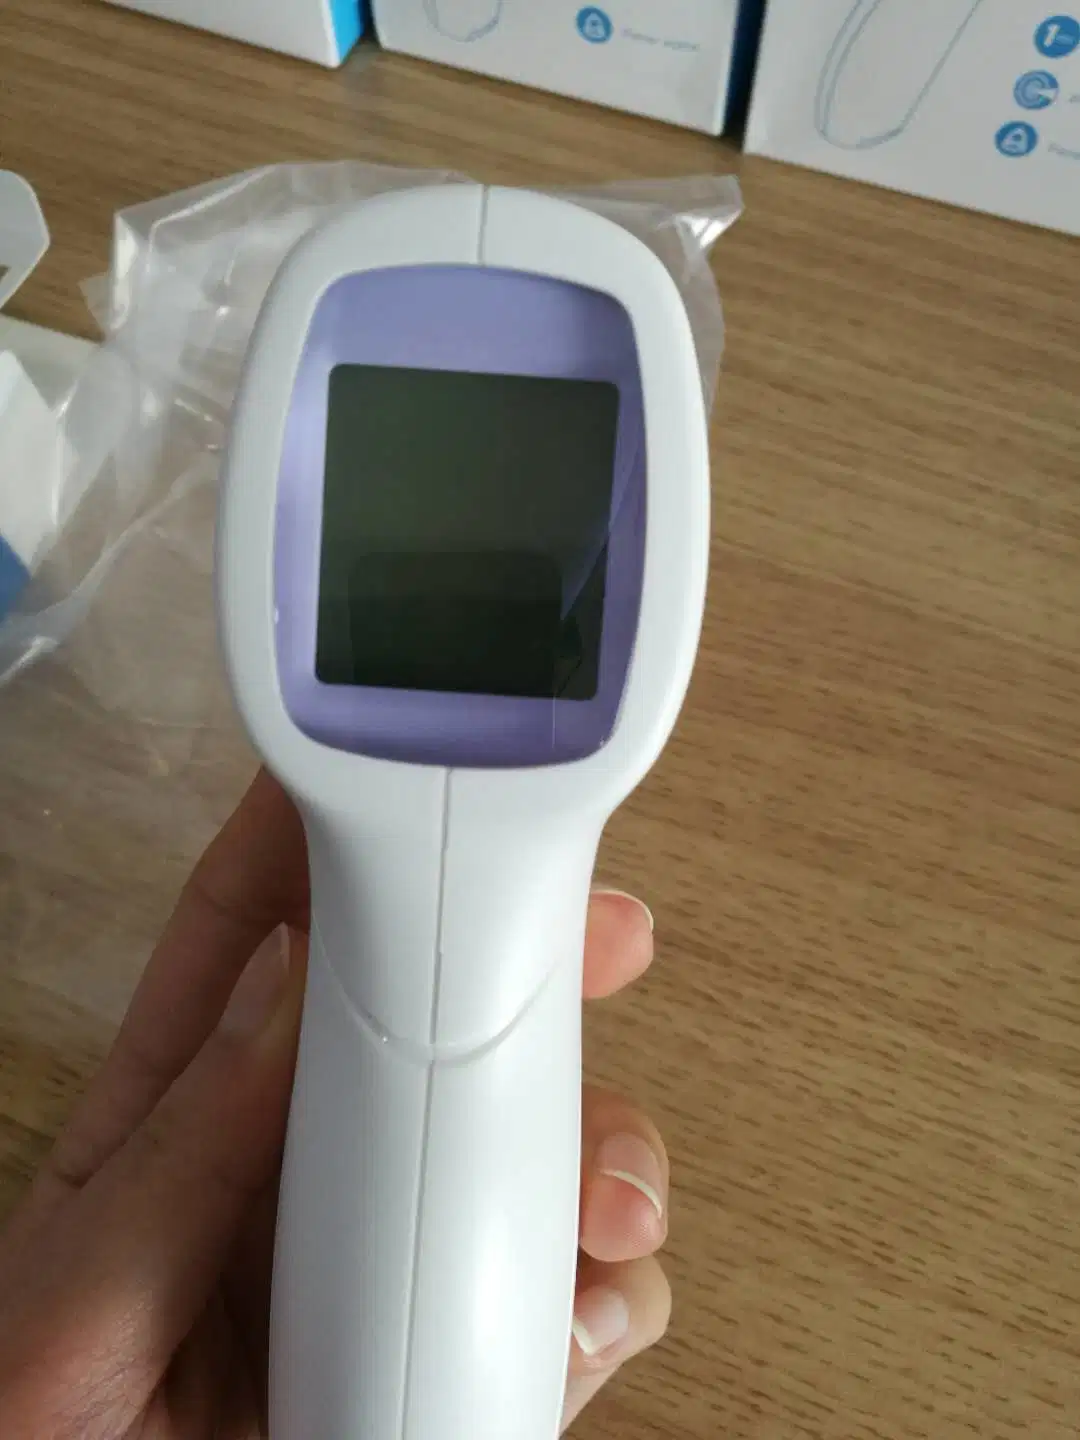 Stirn Infrarot Thermometer, IR Thermometer mit günstigen Preis